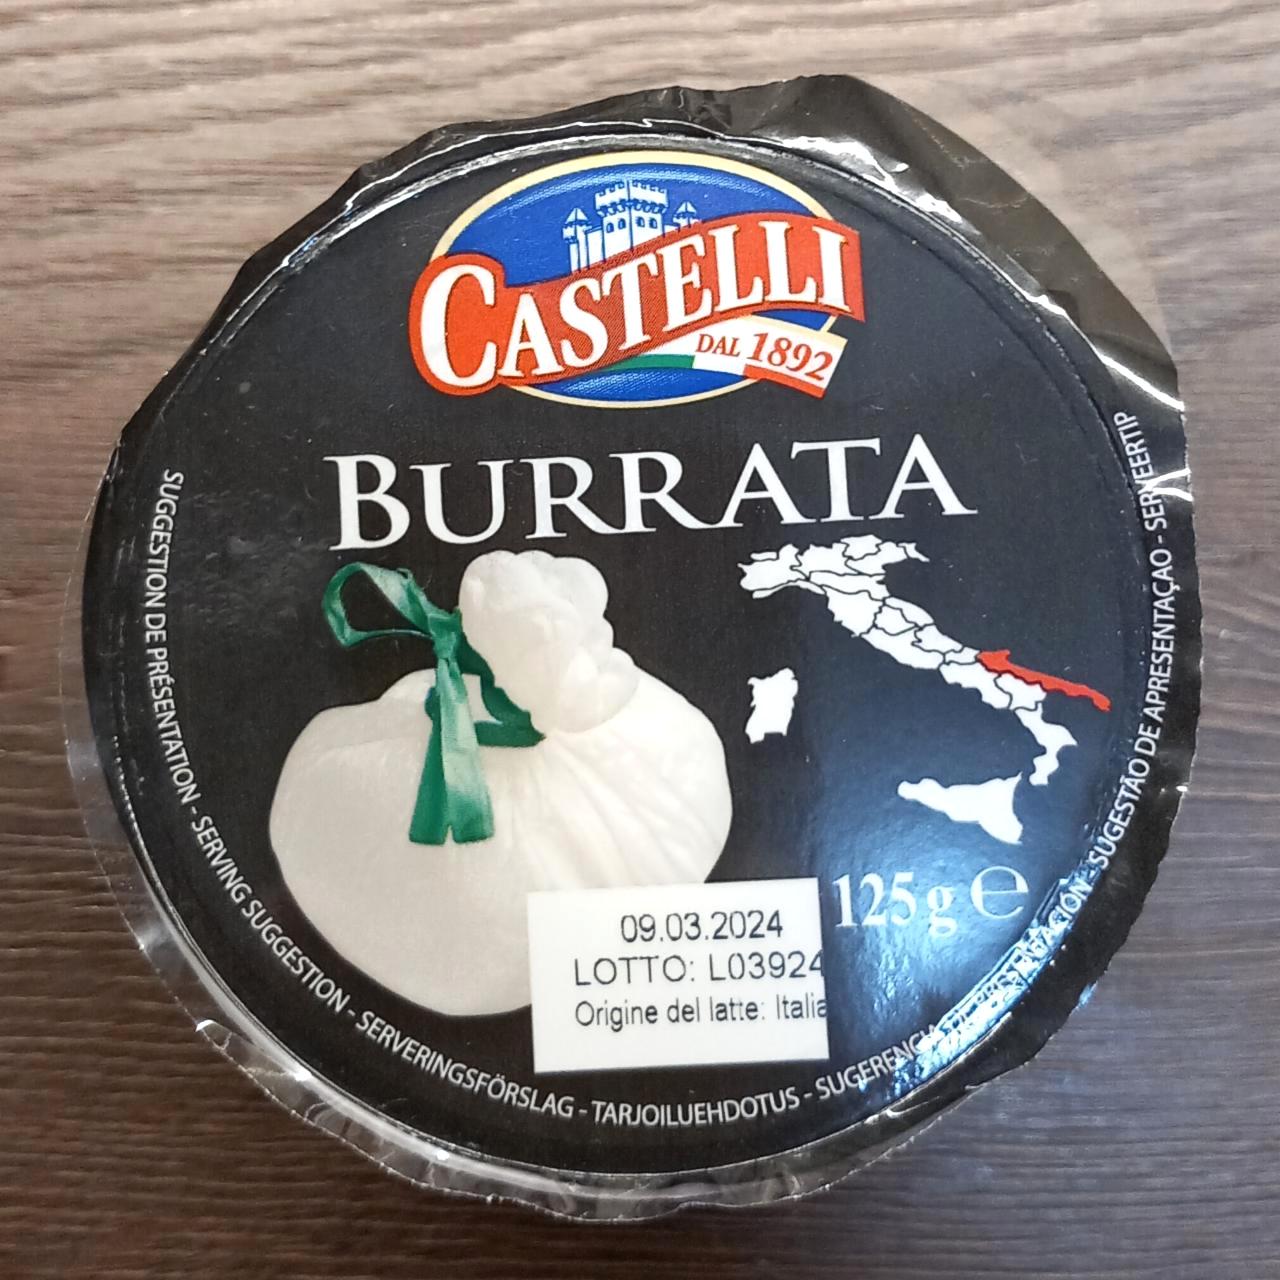 Képek - Burrata Castelli